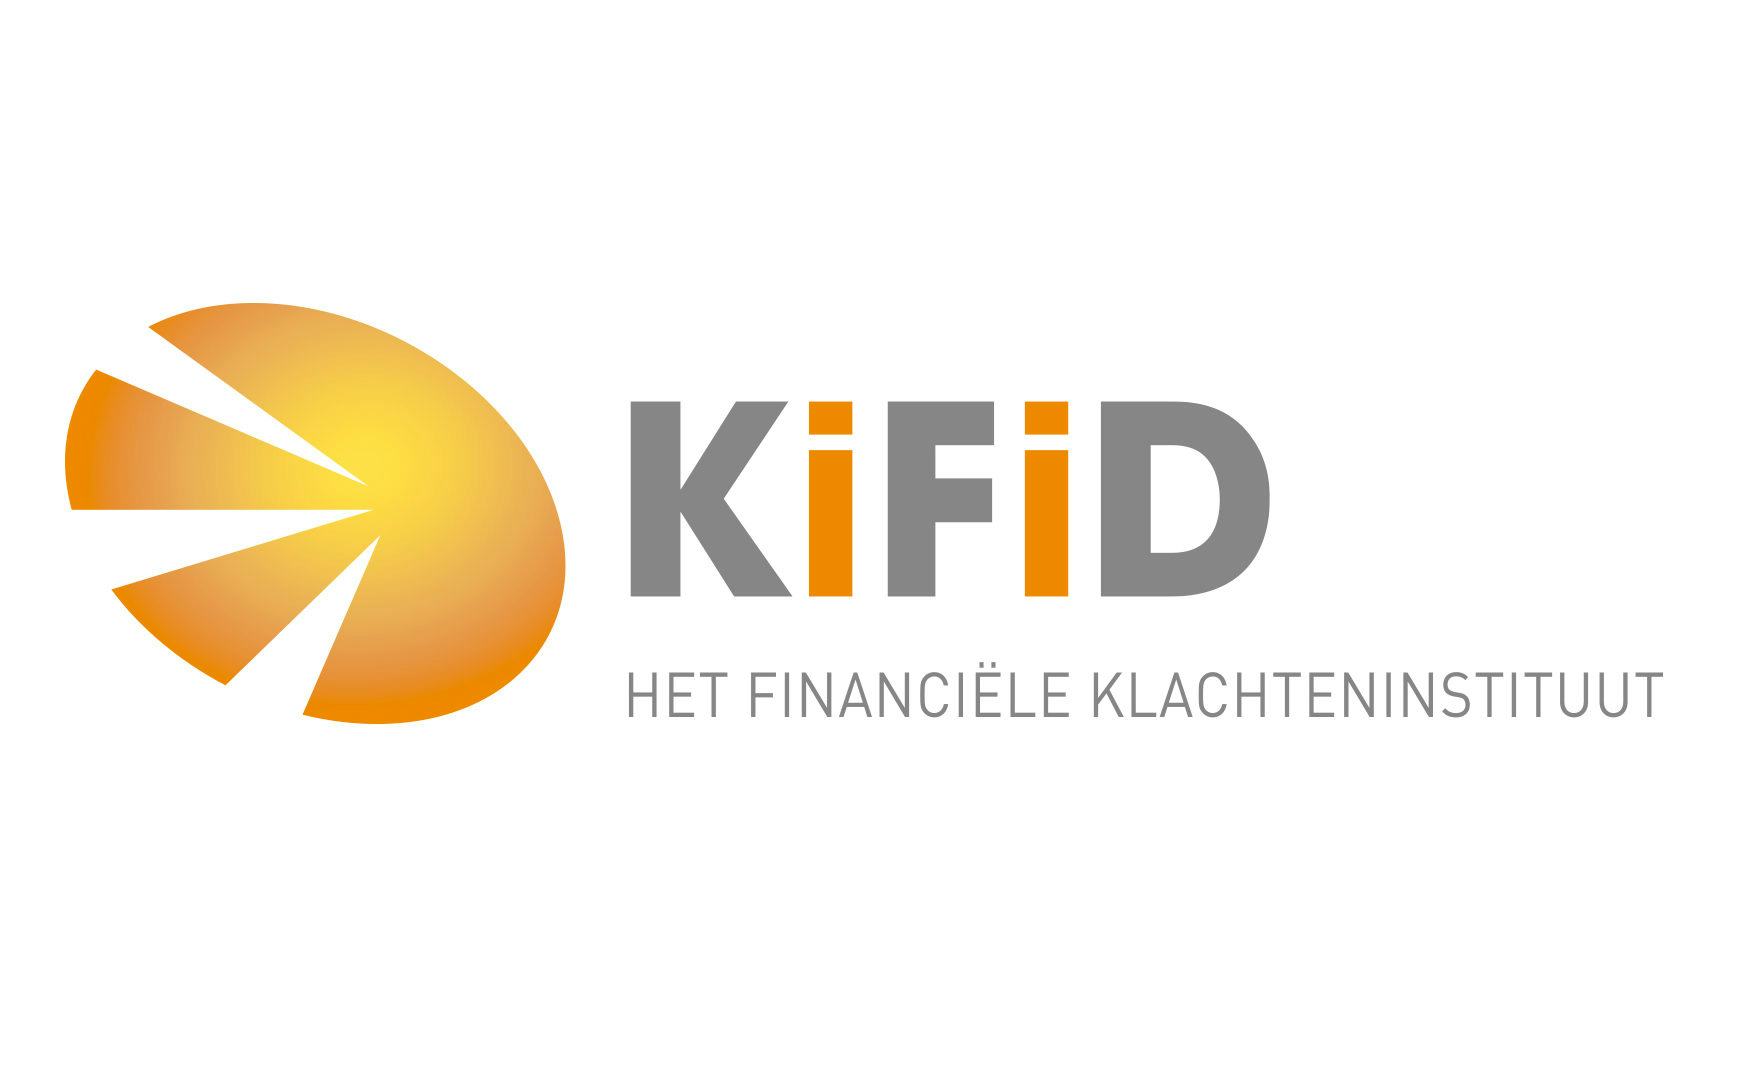 Kifid verwacht tiental nieuwe leden uit alternatieve financieringshoek